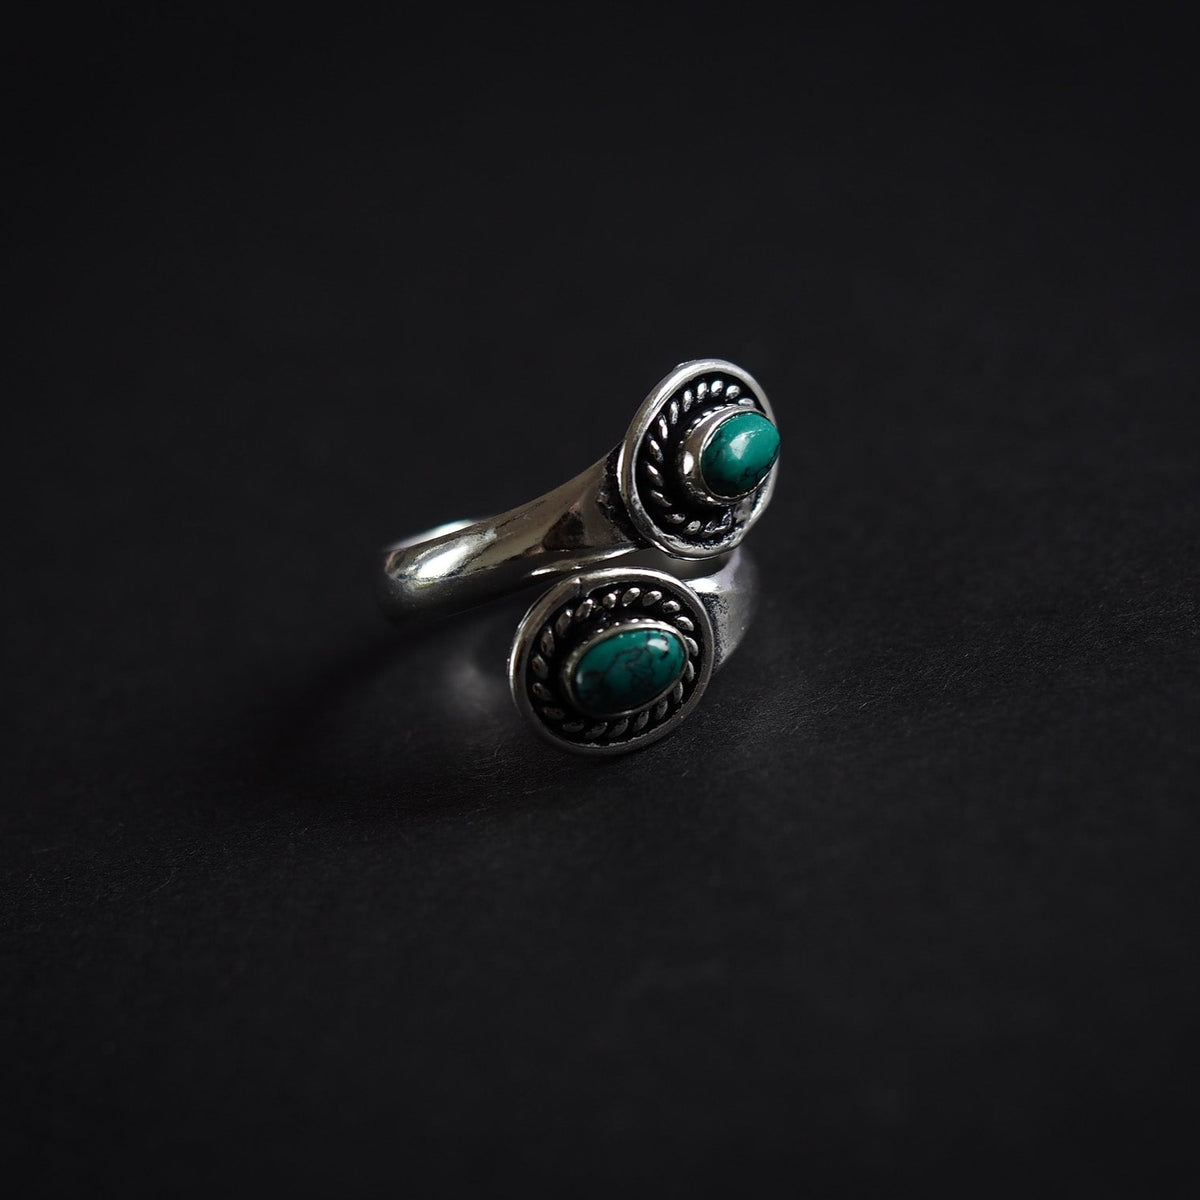 Turkos ,silver,Denna ring är designat som et öppet band om fingret. Mässingens är tillräckligt mjuk och flexibel till att ringen kan justeras i storlek efter behov.